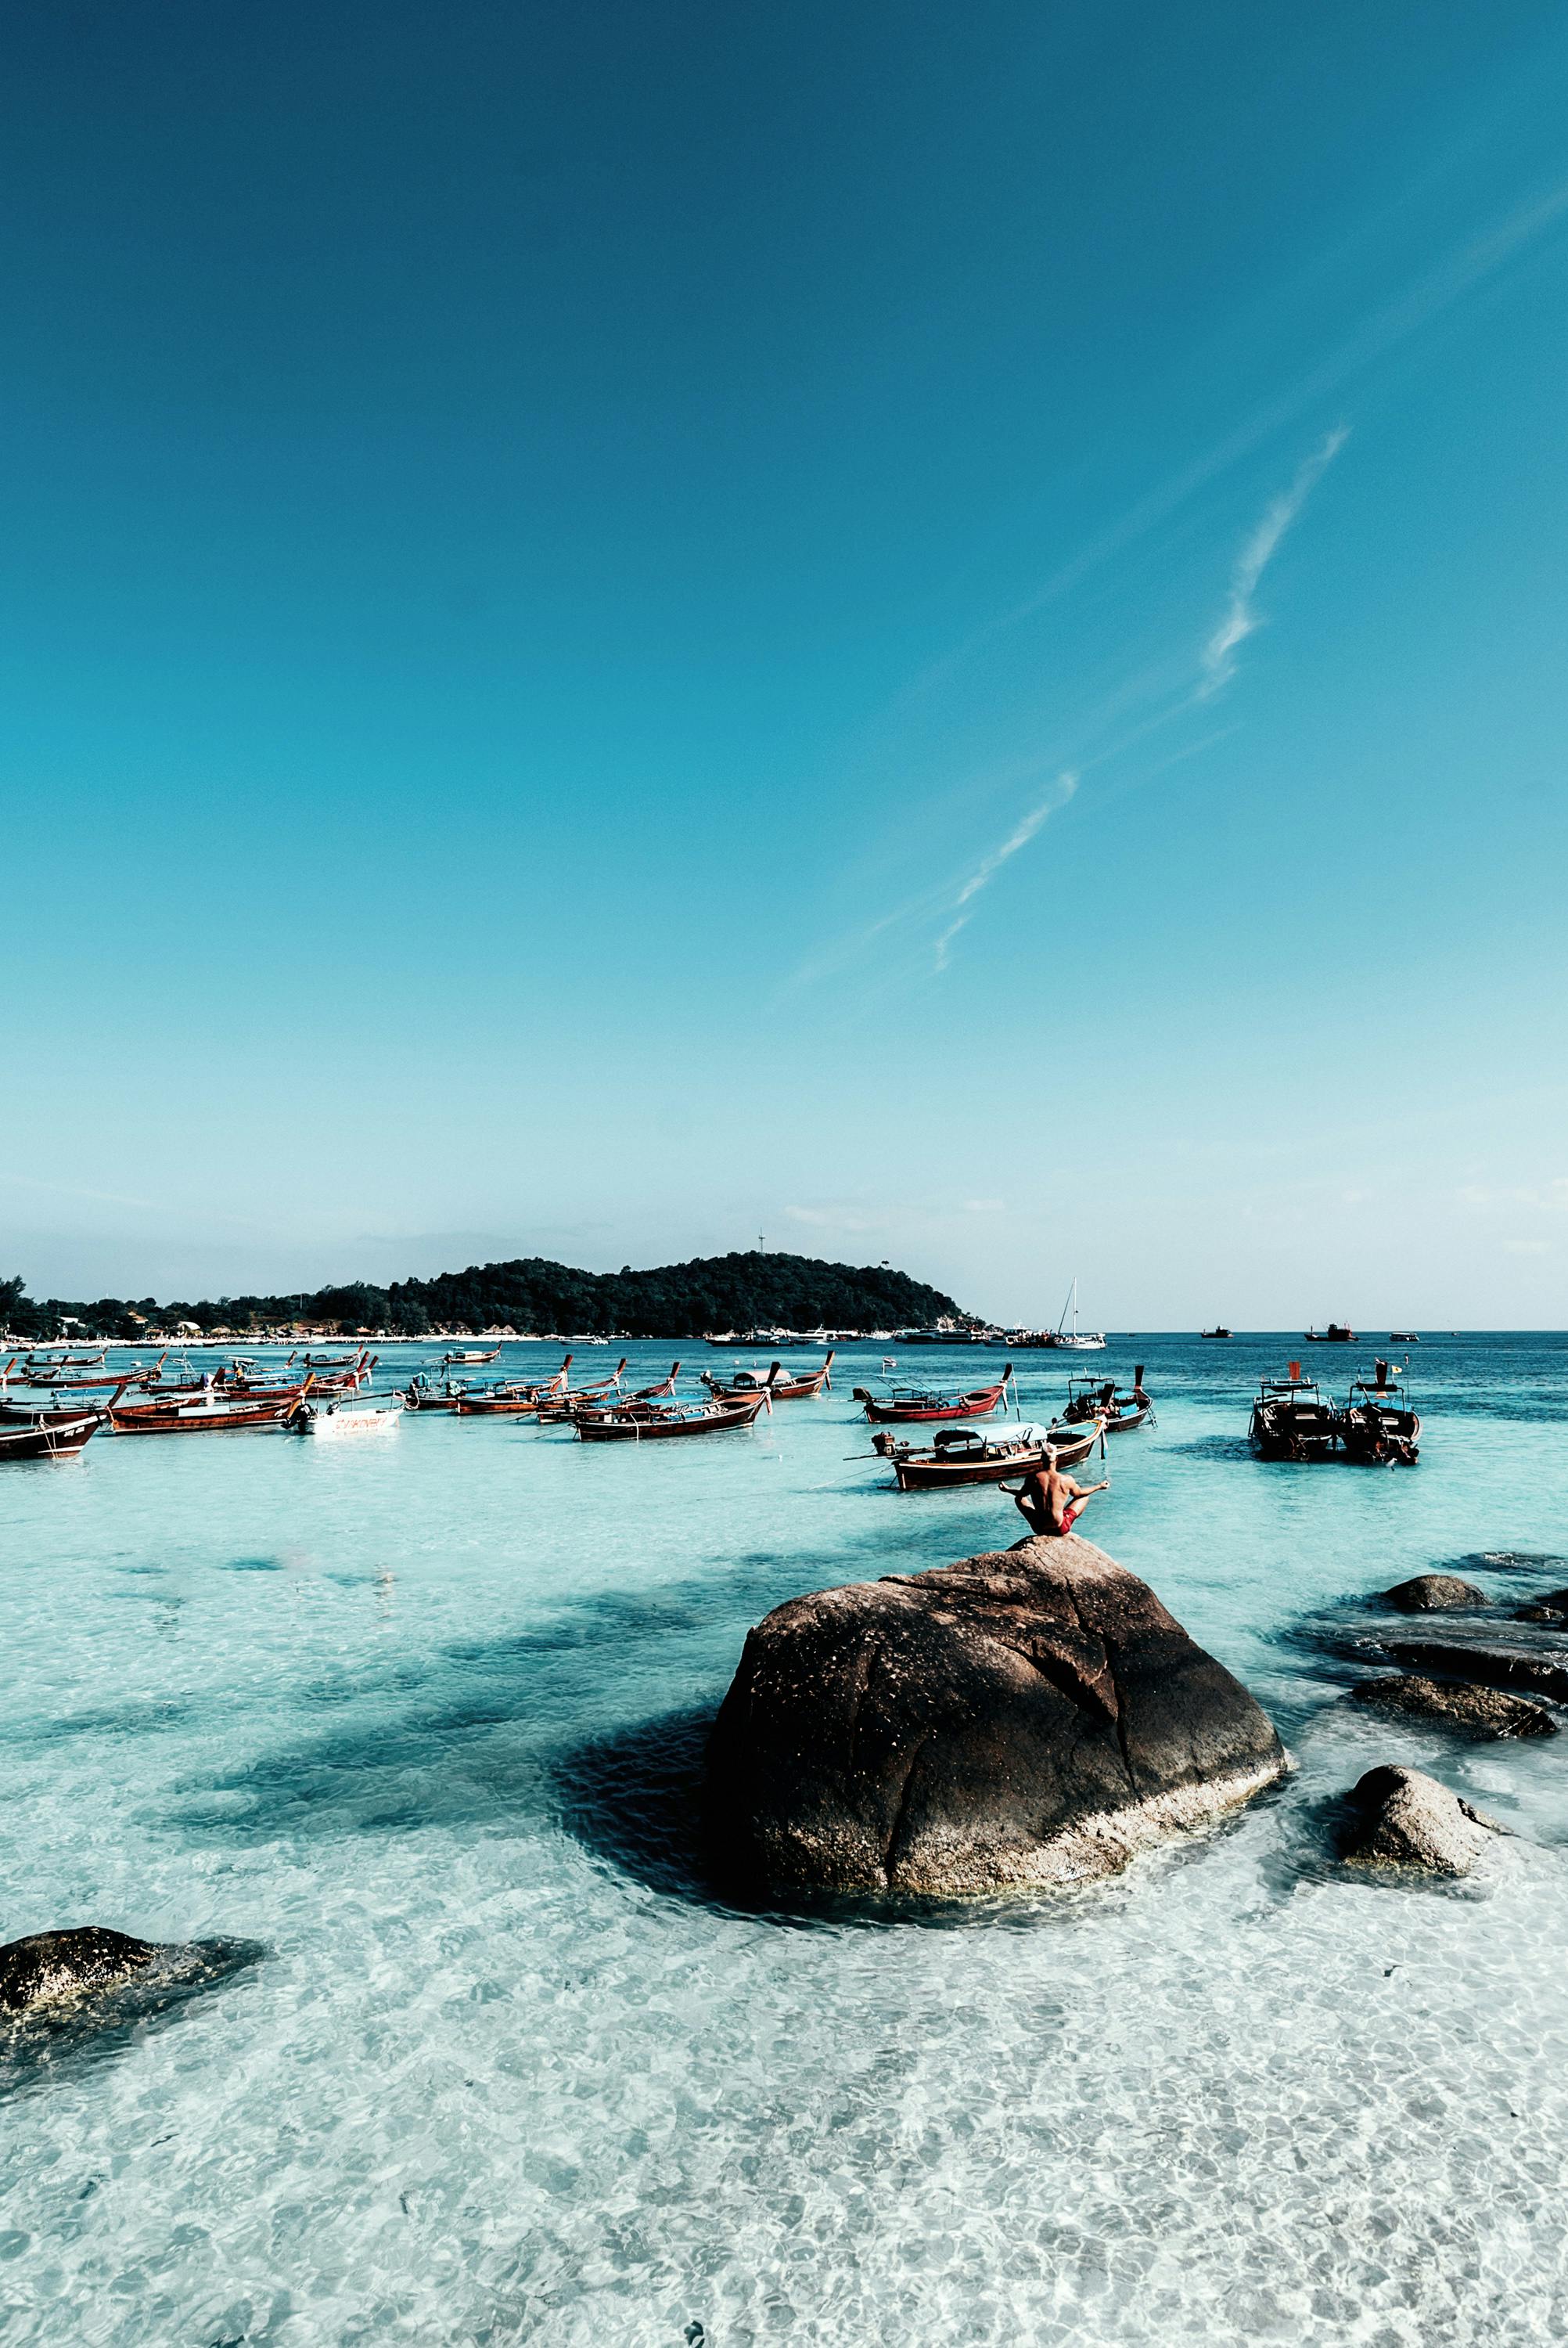 Hình nền đại dương tuyệt đẹp  Trung Tâm Đào Tạo Việt Á